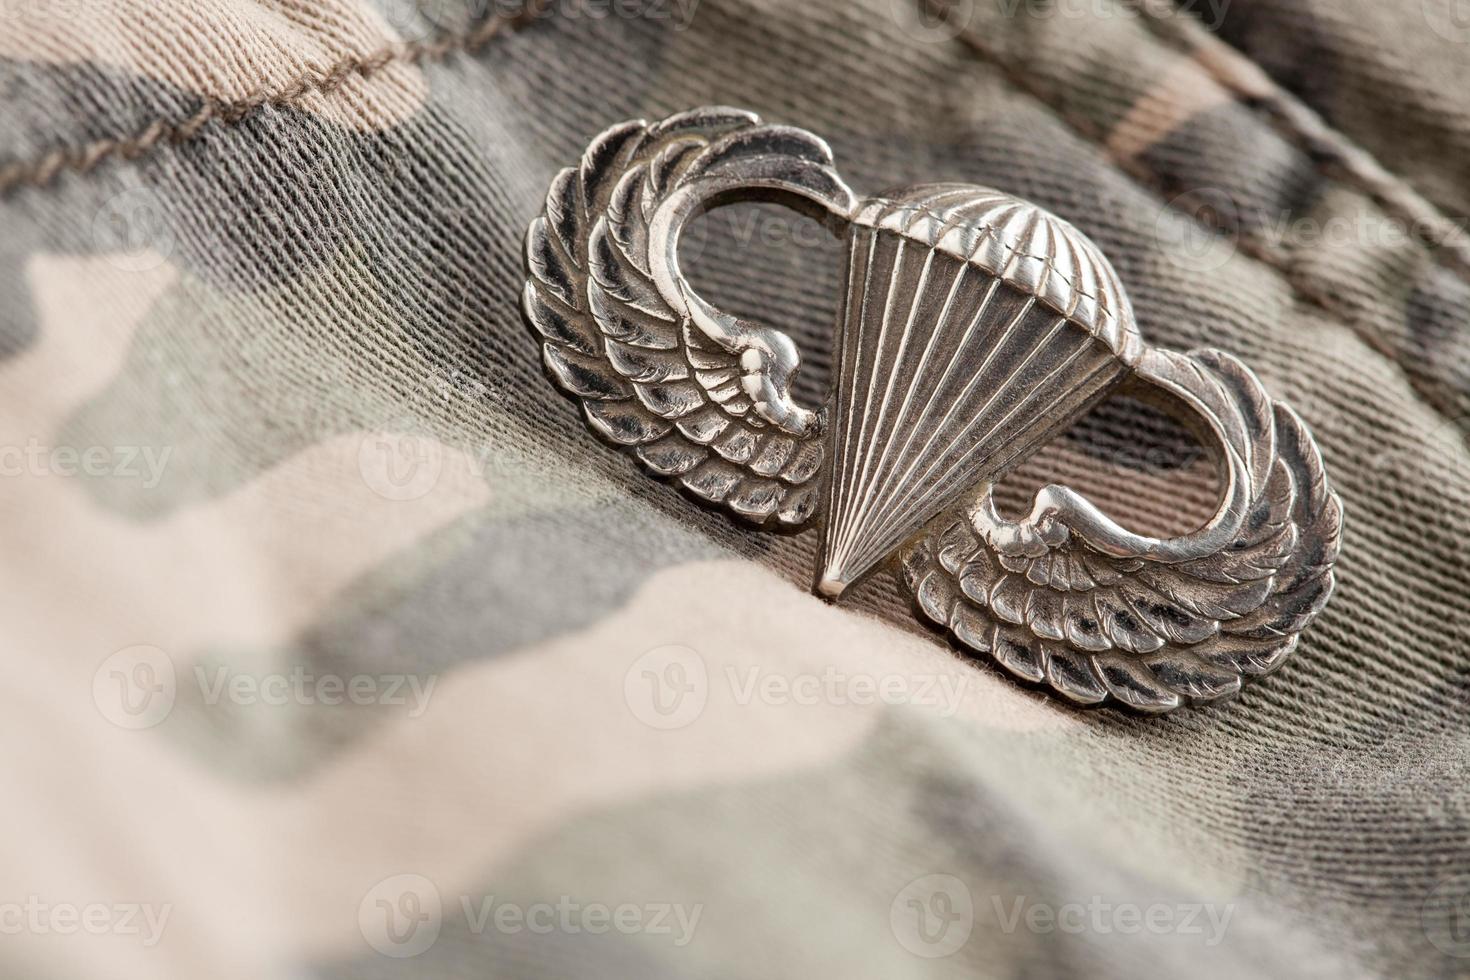 Fallskärmsjägare krig medalj foto